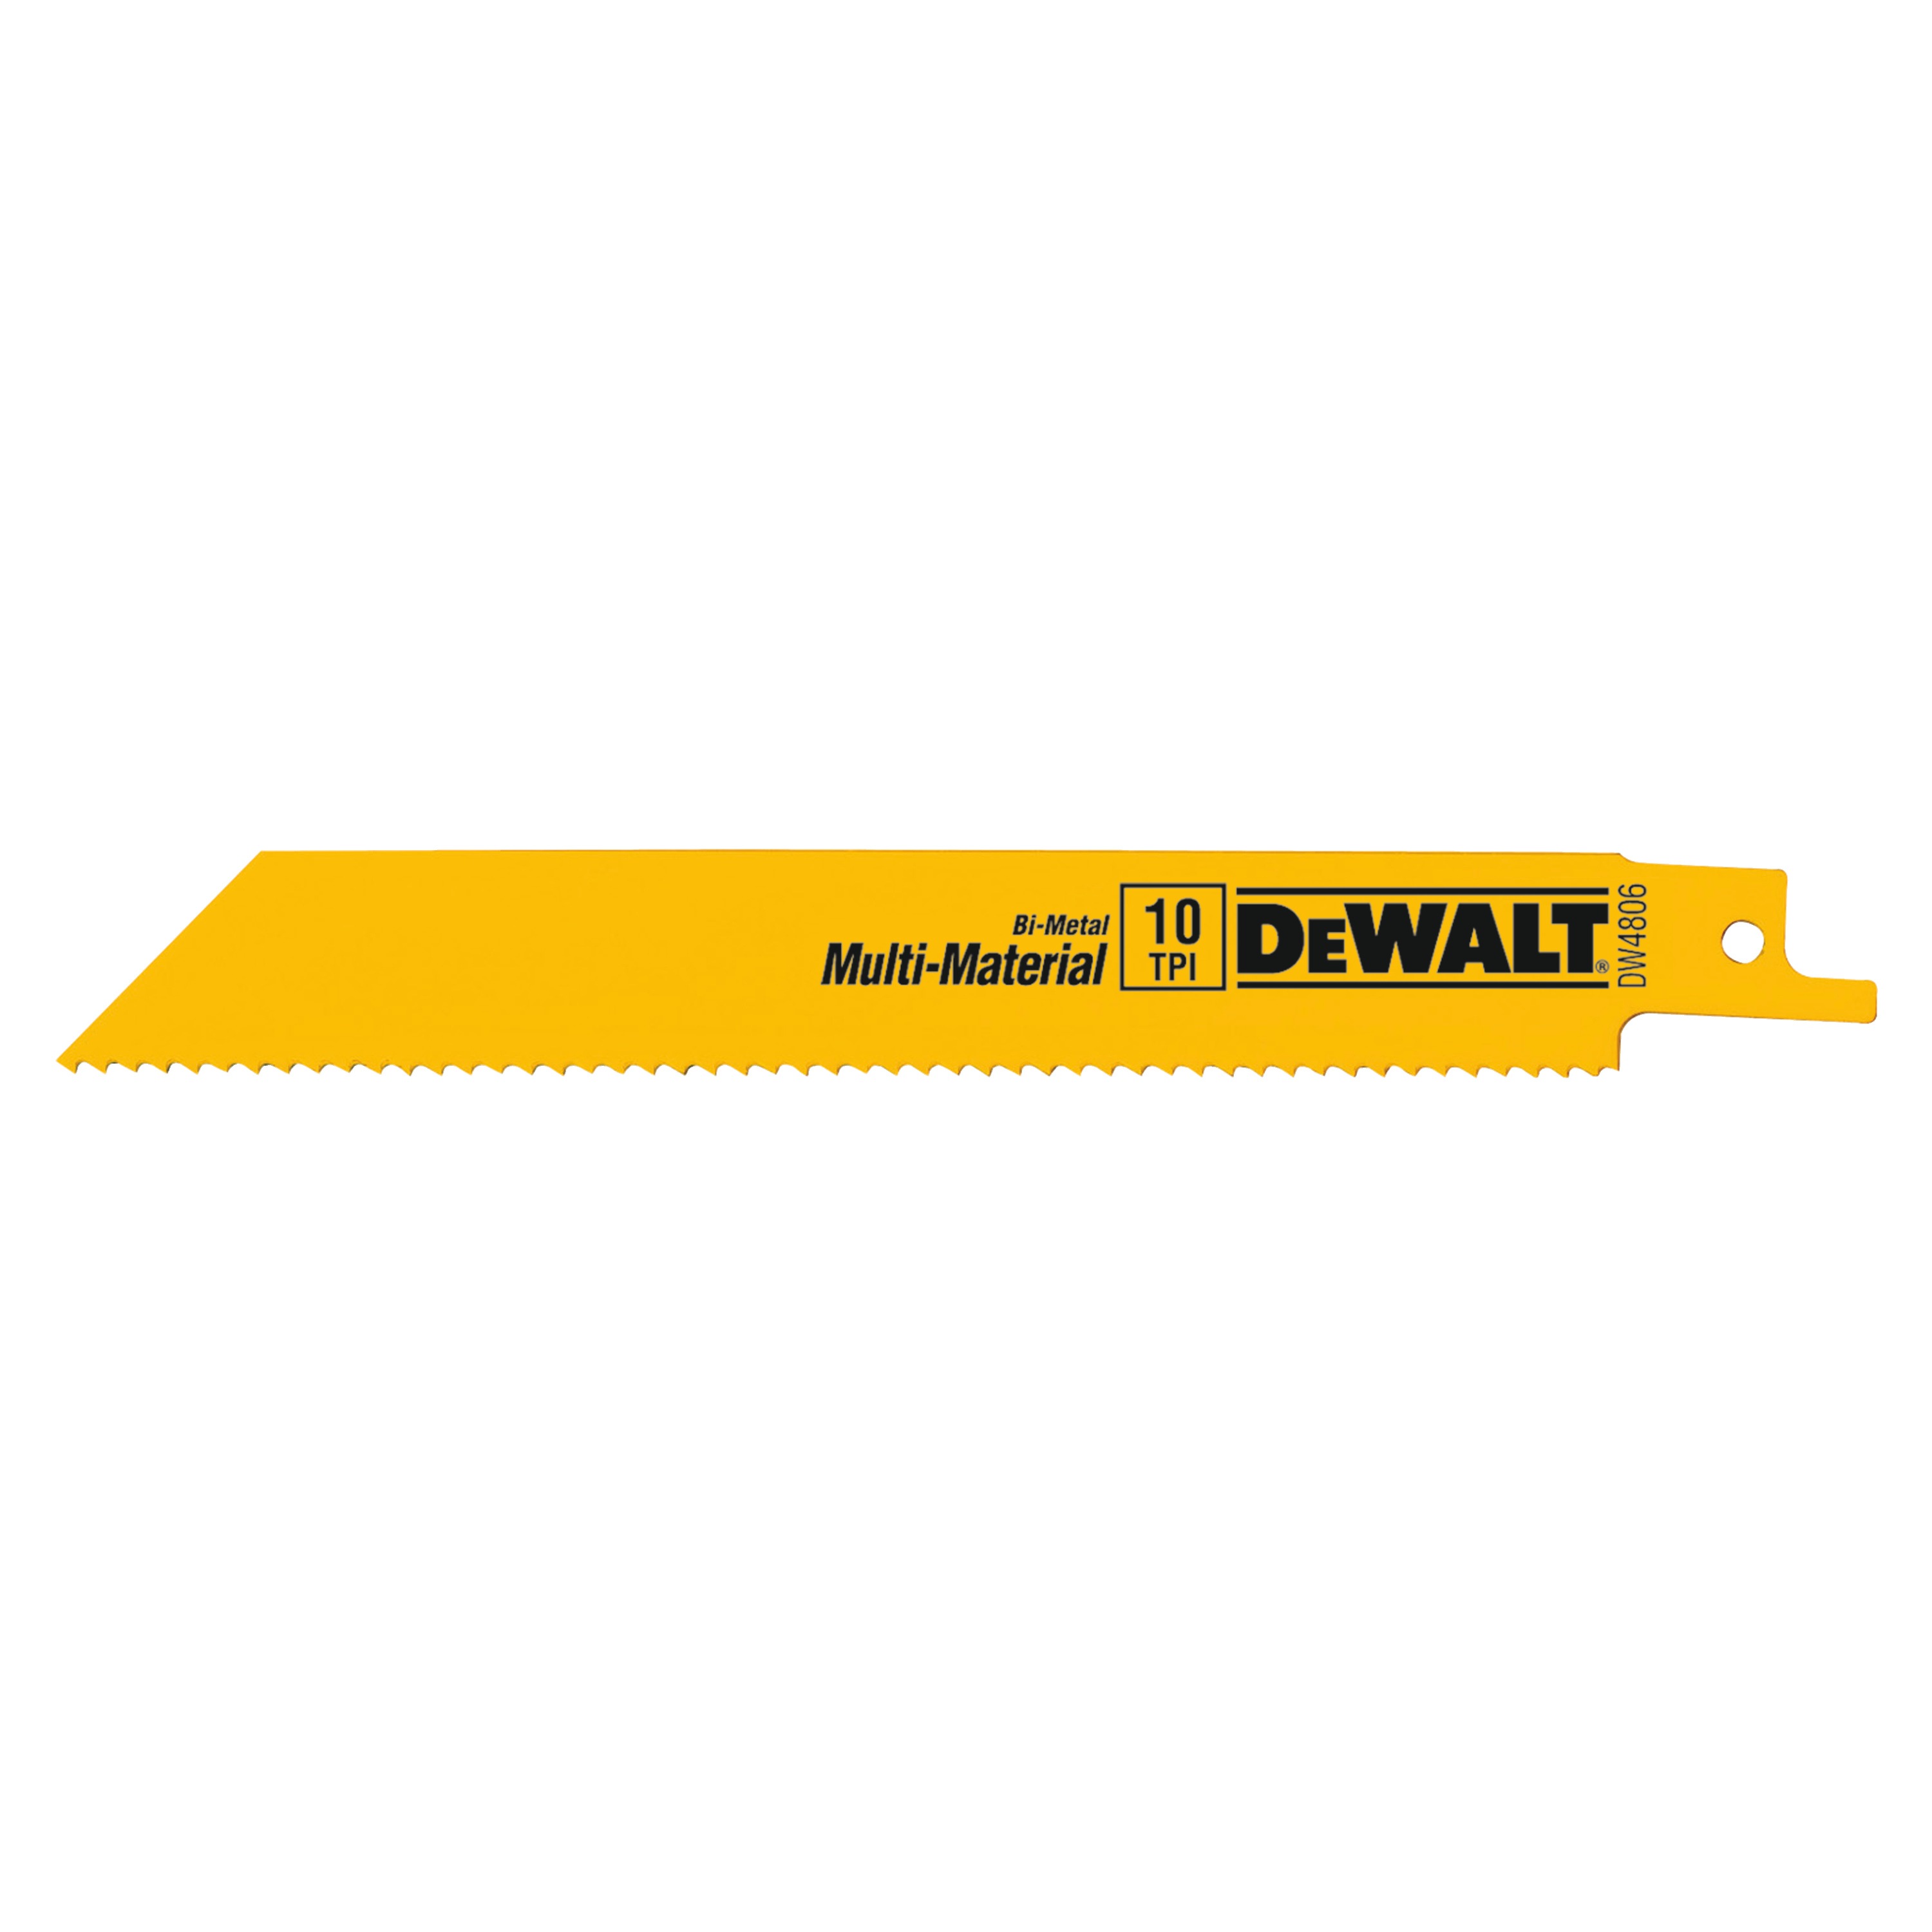 5 Pcs. Dewalt DT2408 Reciprocating Saw Blades for Metal 